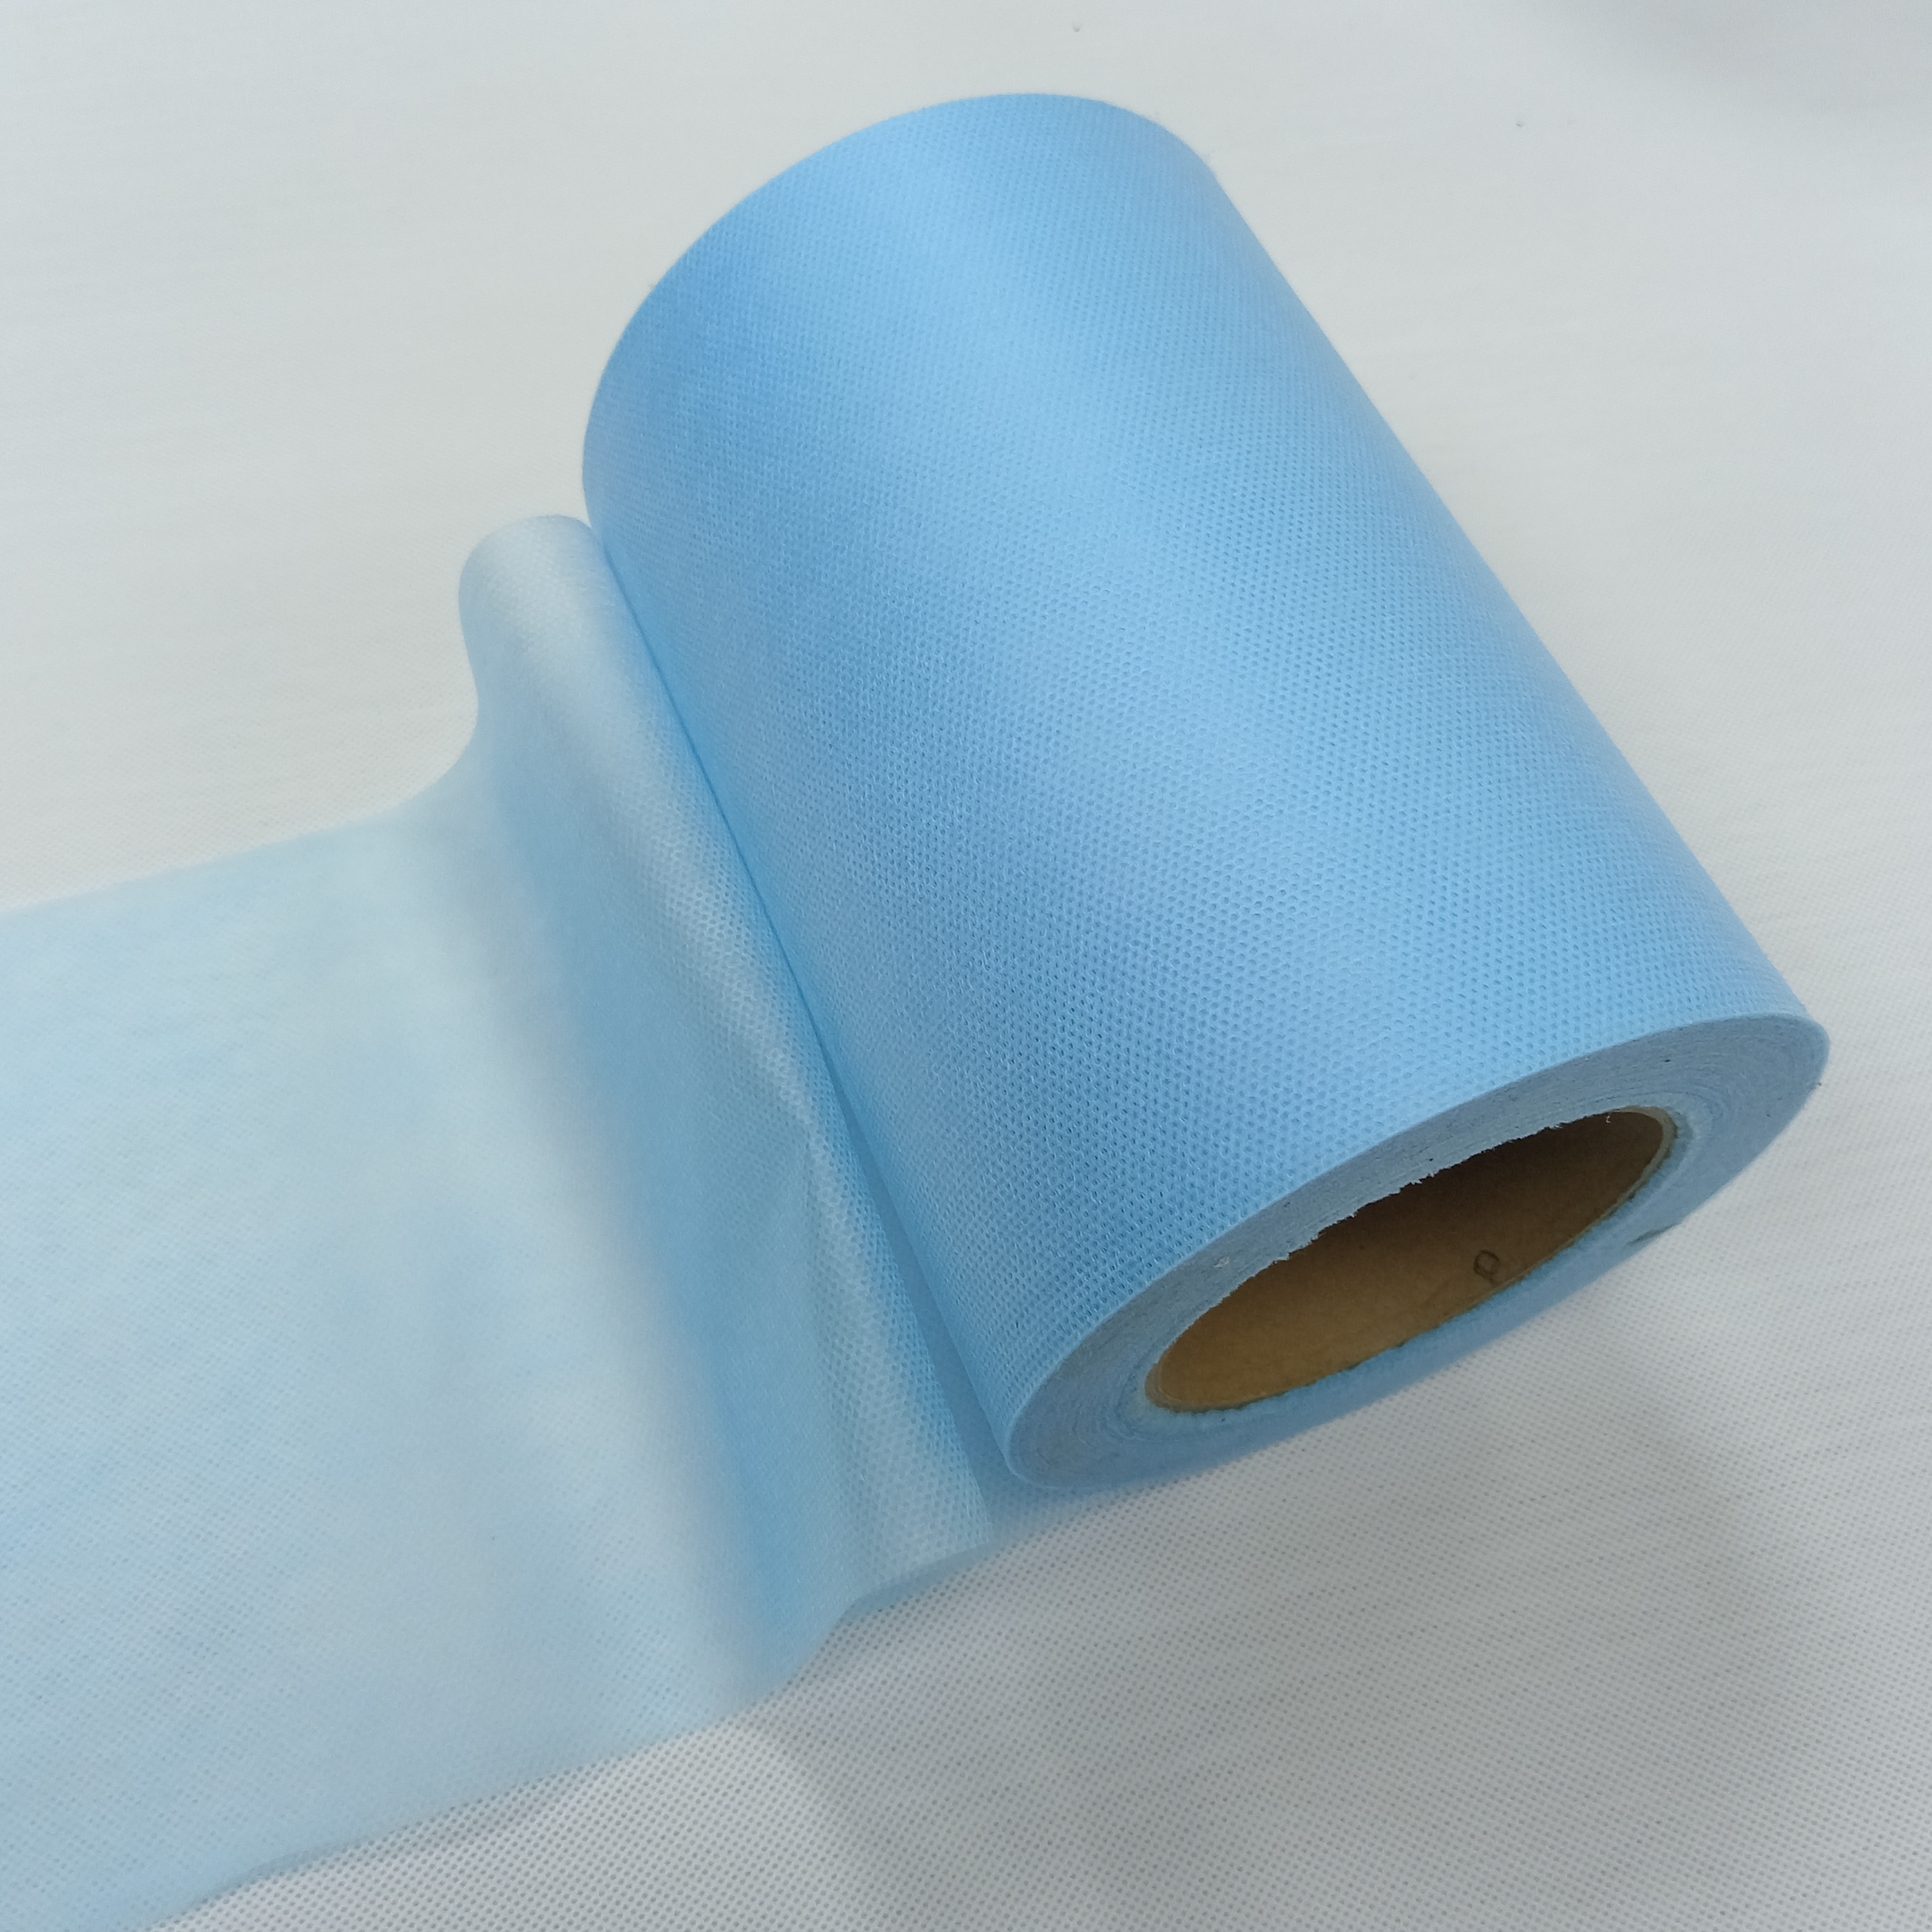 Breathable Cloth 100%PP Spunbond Non Woven Fabricr Oll for Medical Non Woven Fabric 